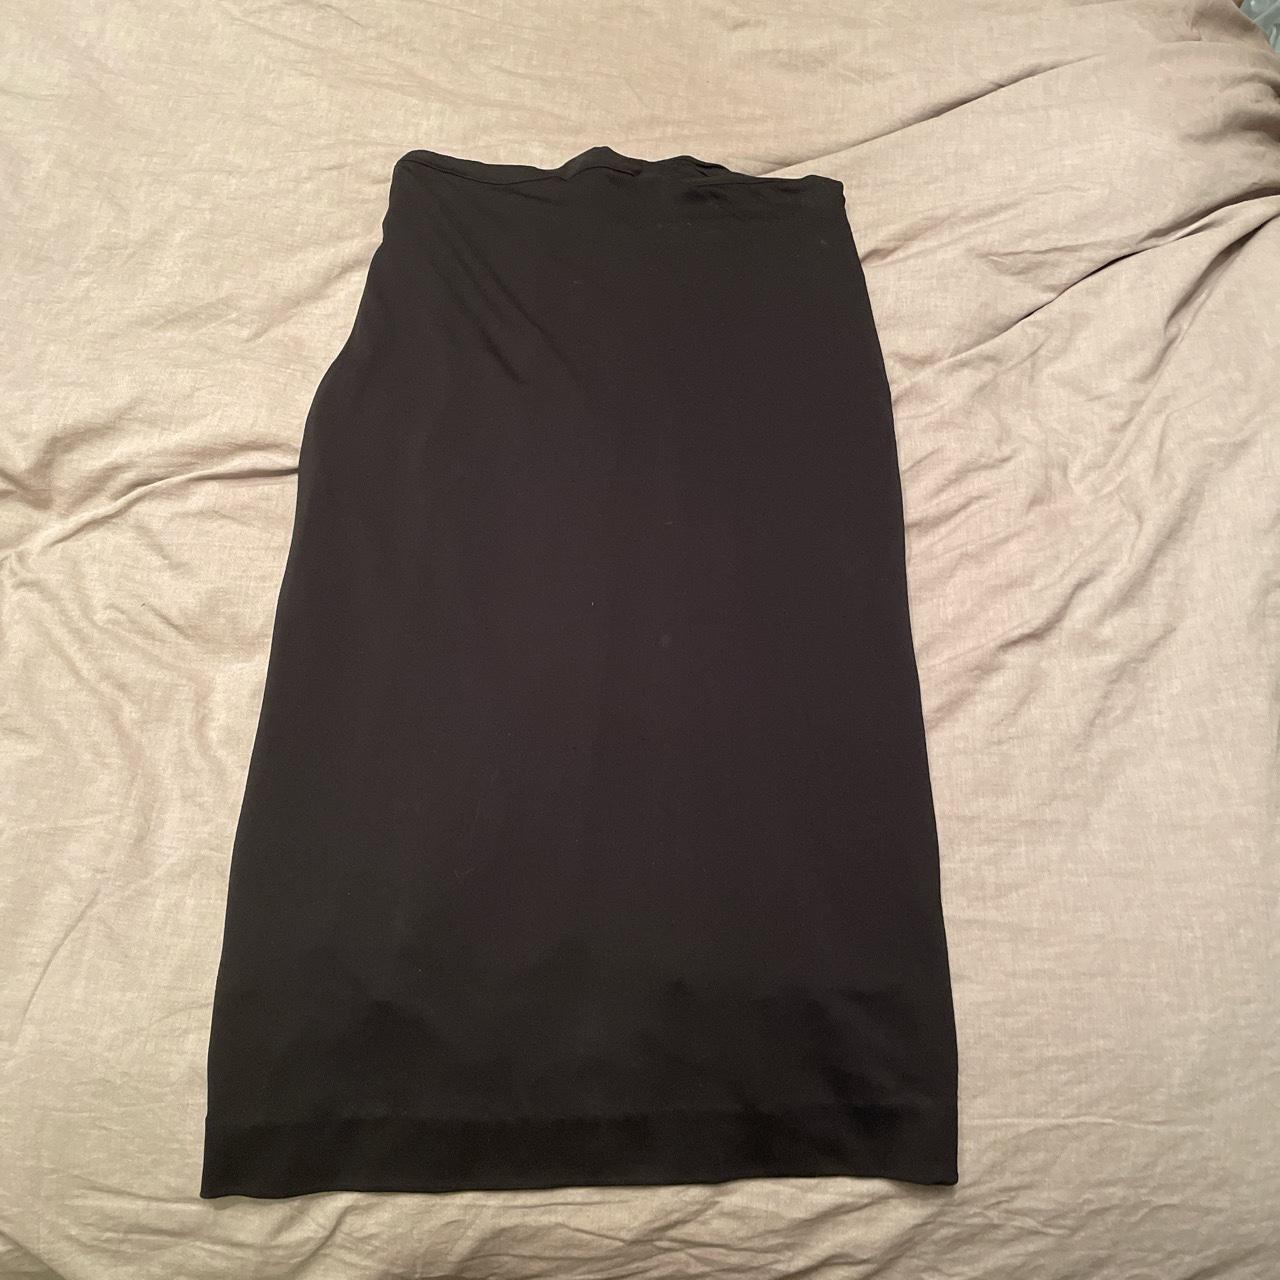 Moschino Cheap & Chic Women's Black Skirt